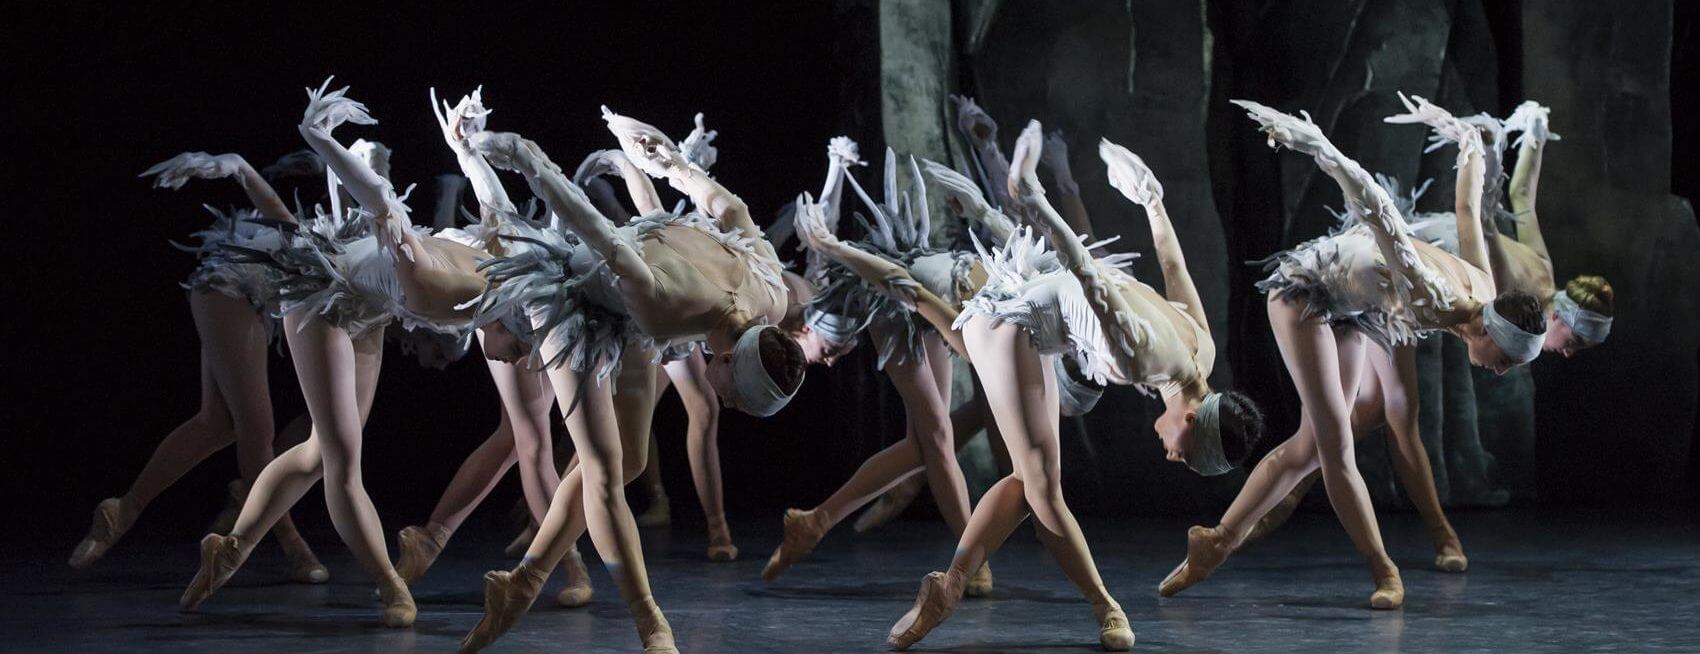 Les Ballets de Montecarlo evento dubai 2021